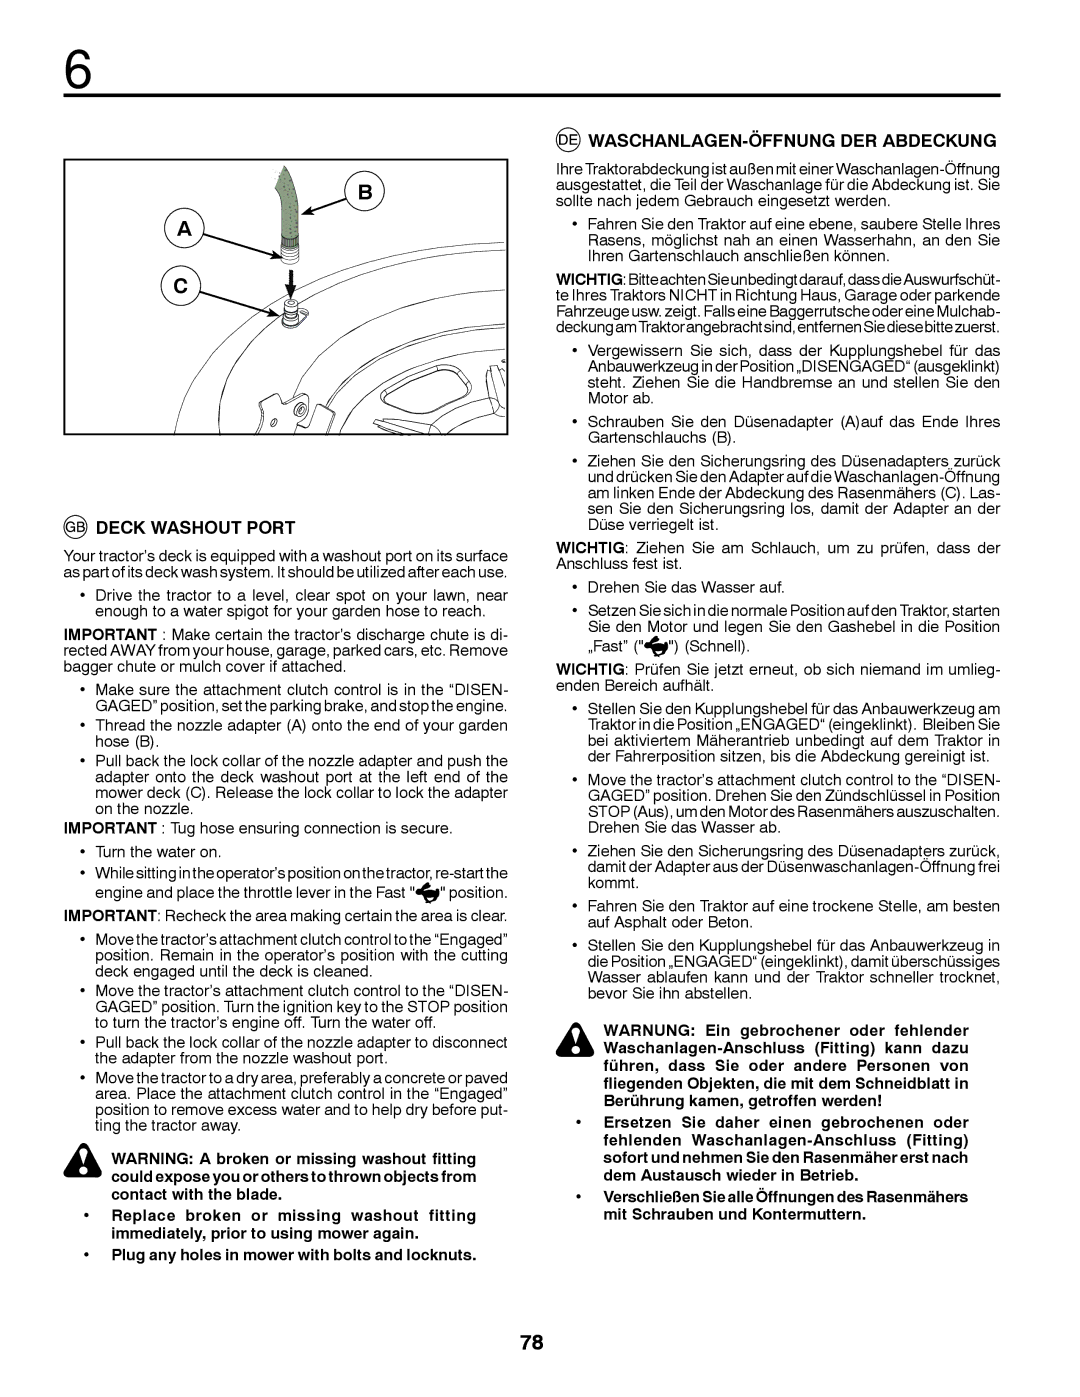 McCulloch 96041012401, 532 43 18-99 Rev. 1 instruction manual Deck Washout Port, WASCHANLAGEN-ÖFFNUNG DER Abdeckung 